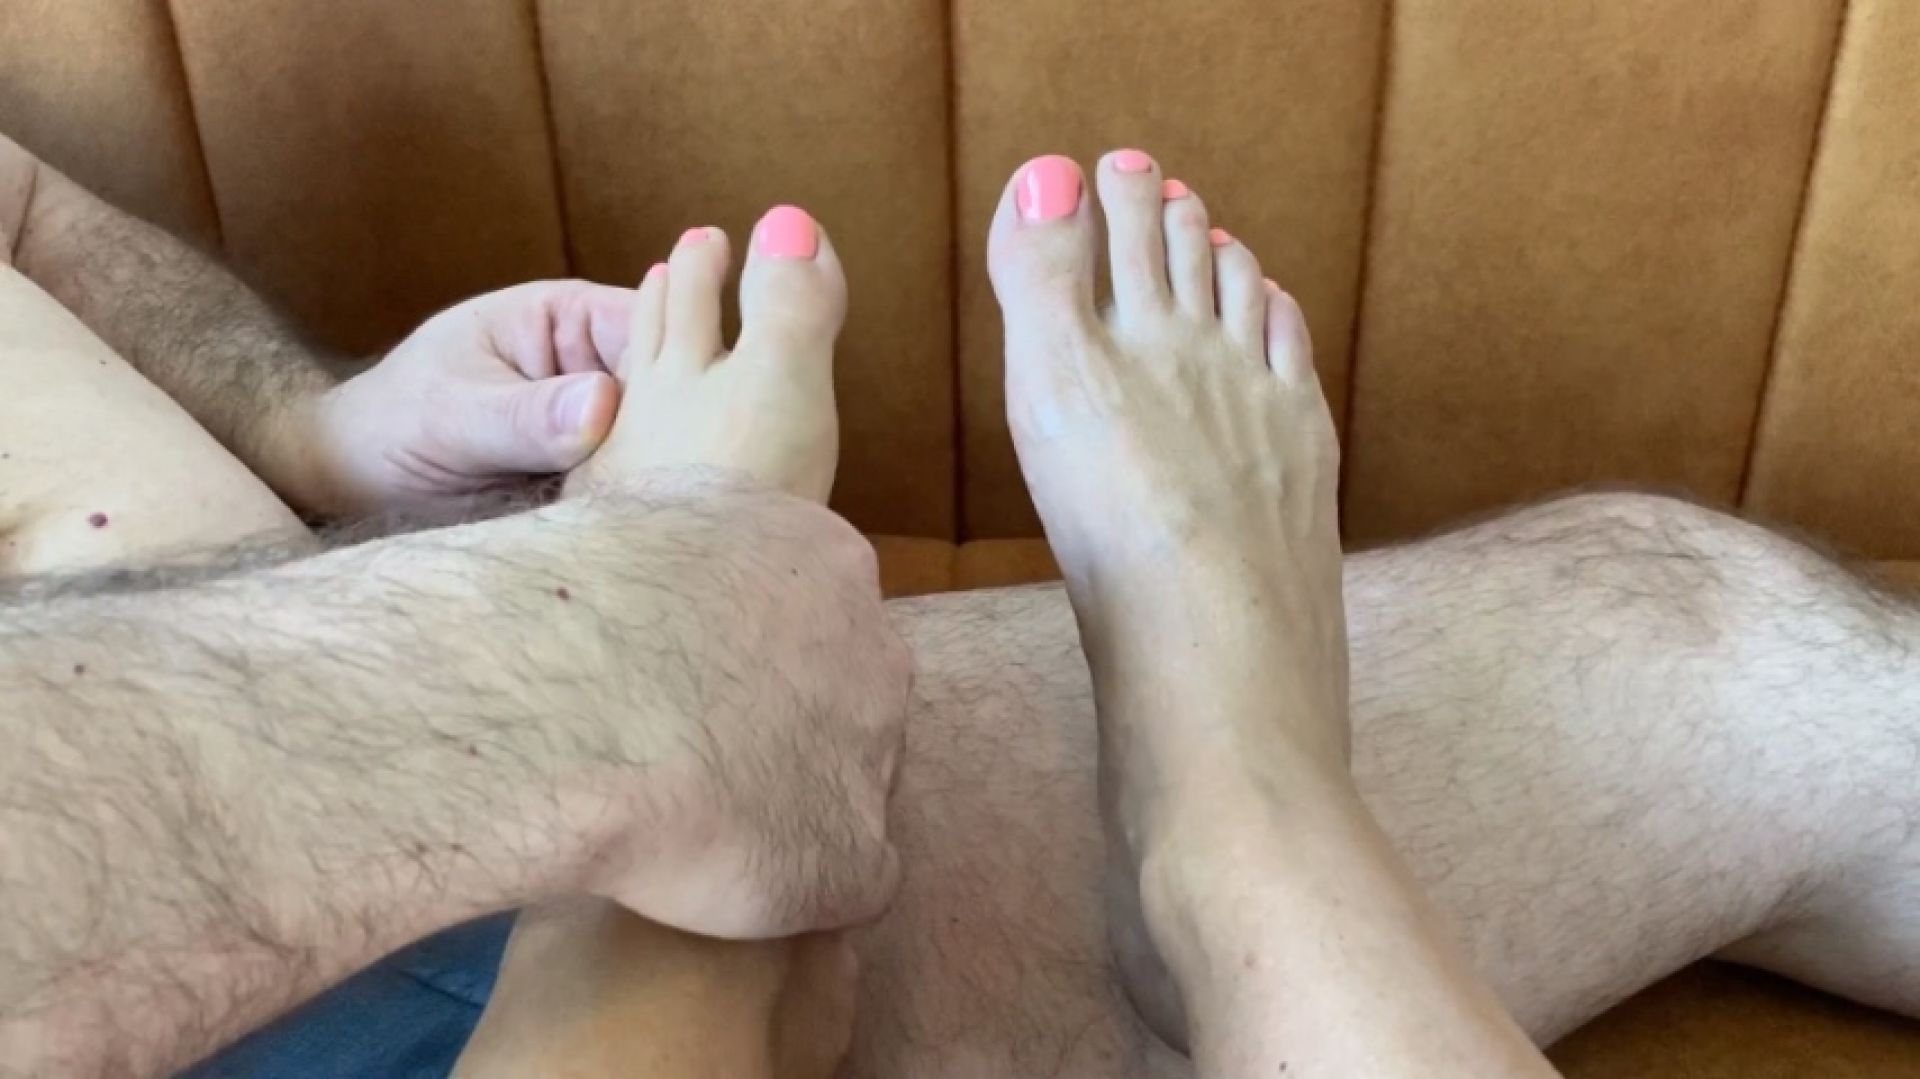 Foot massage turned footjob fun